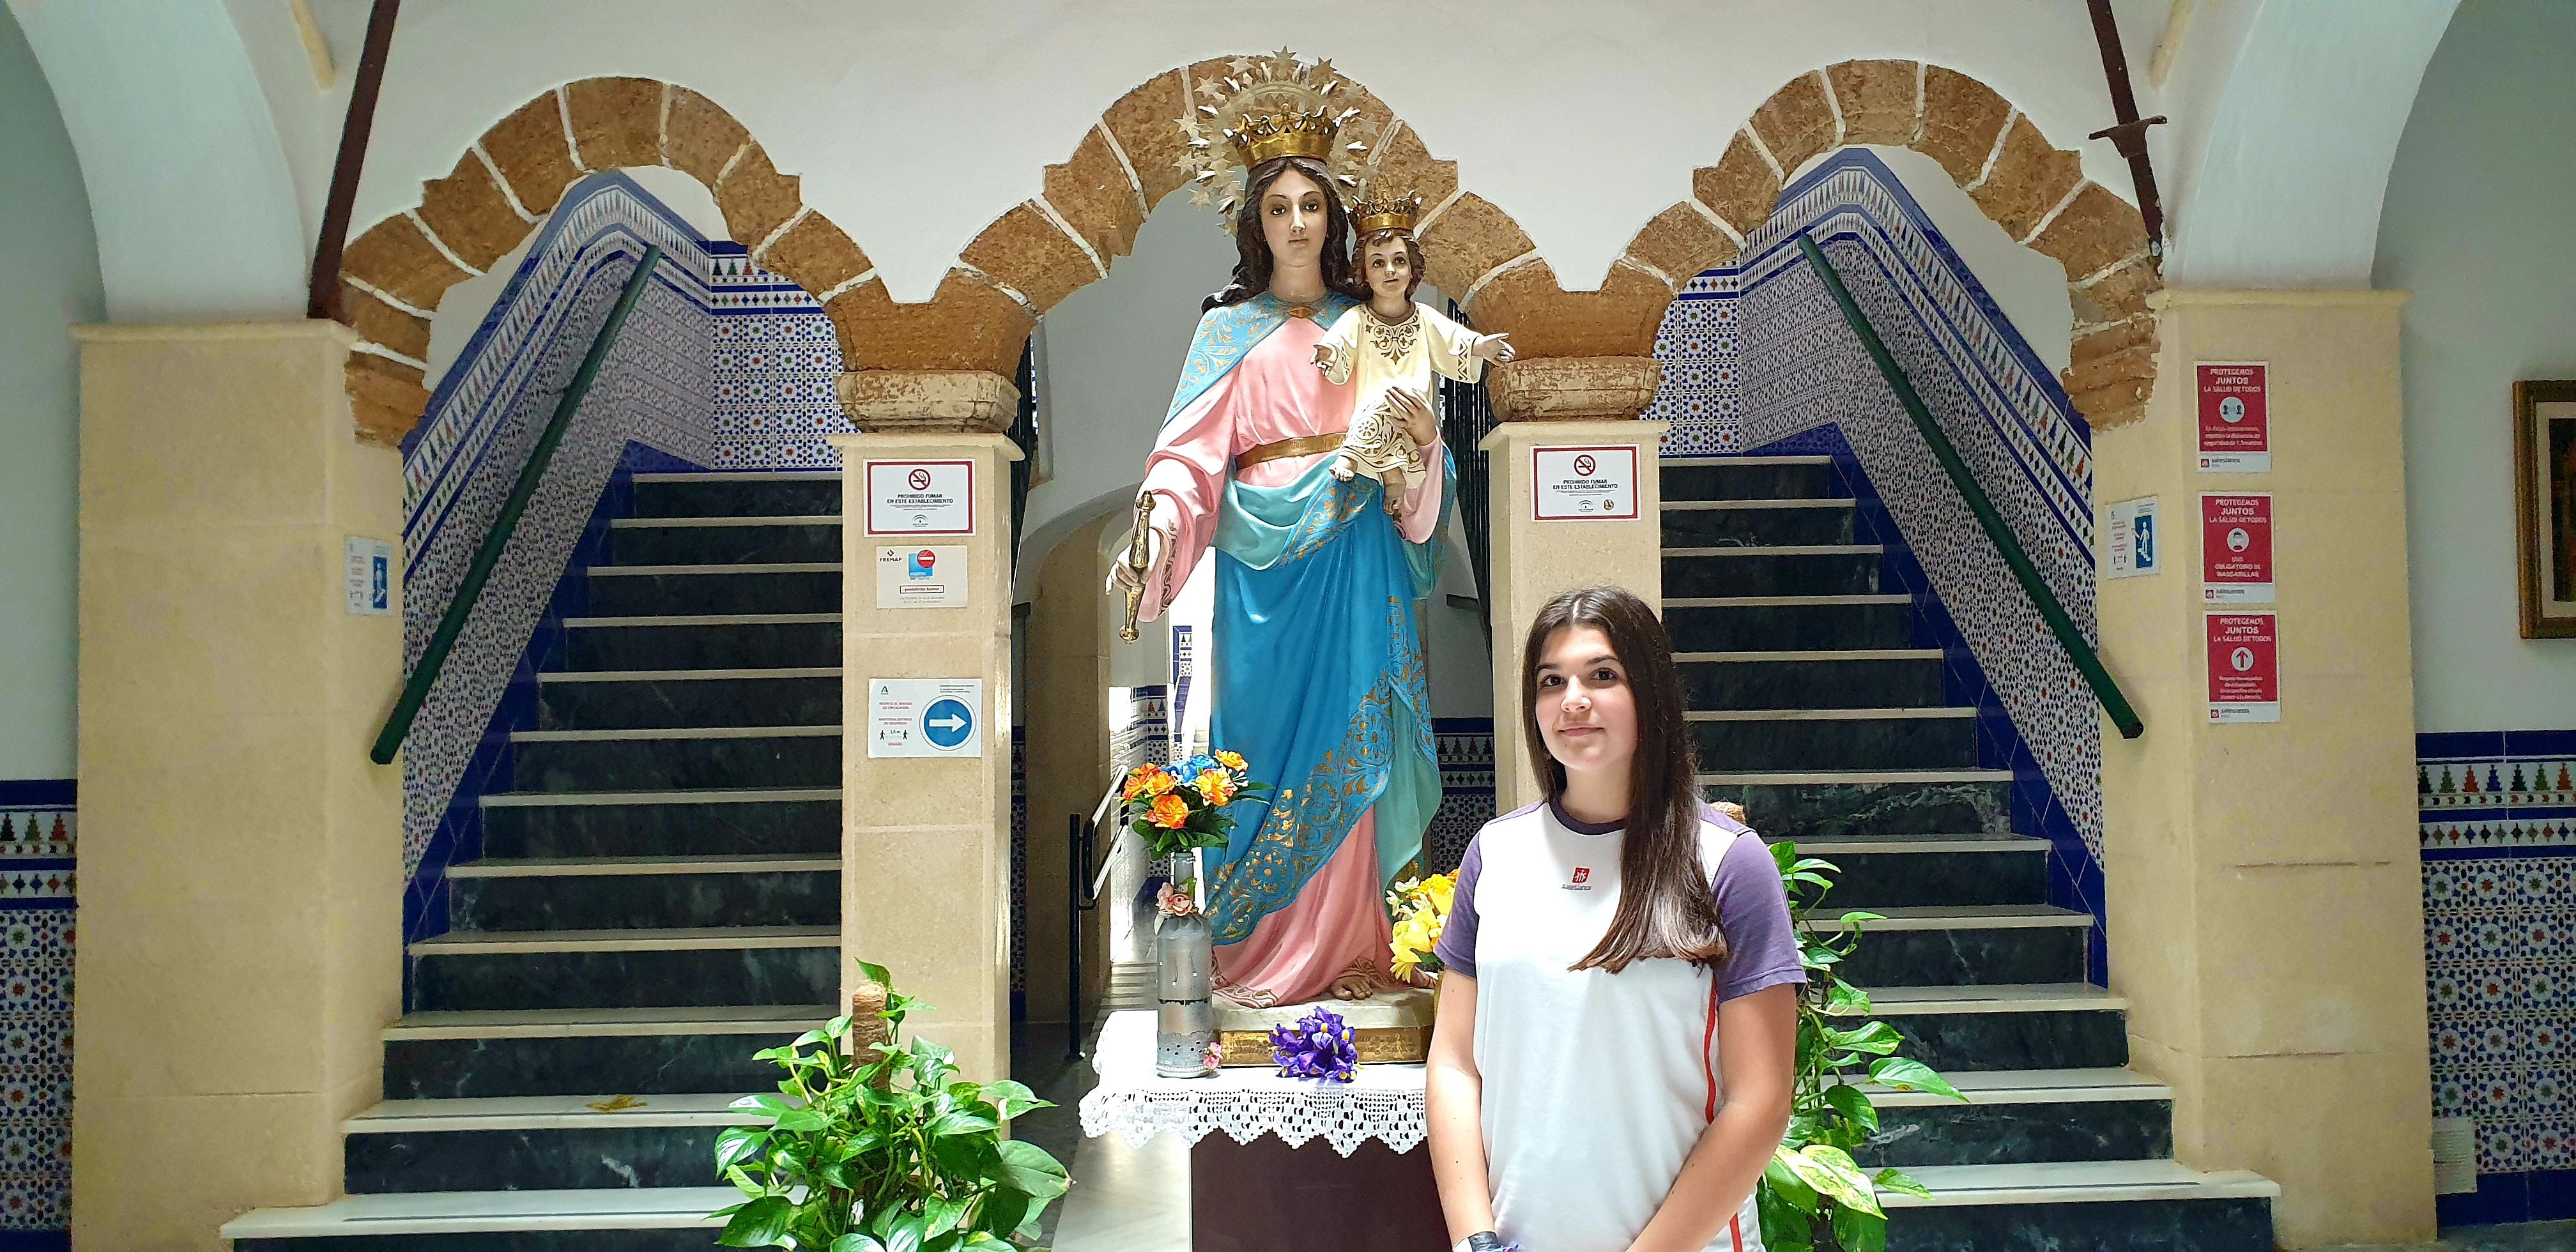 La estudiante roteña Julia Bernal en la entrada del colegio Salesianos de Rota junto a María Auxiliadora.